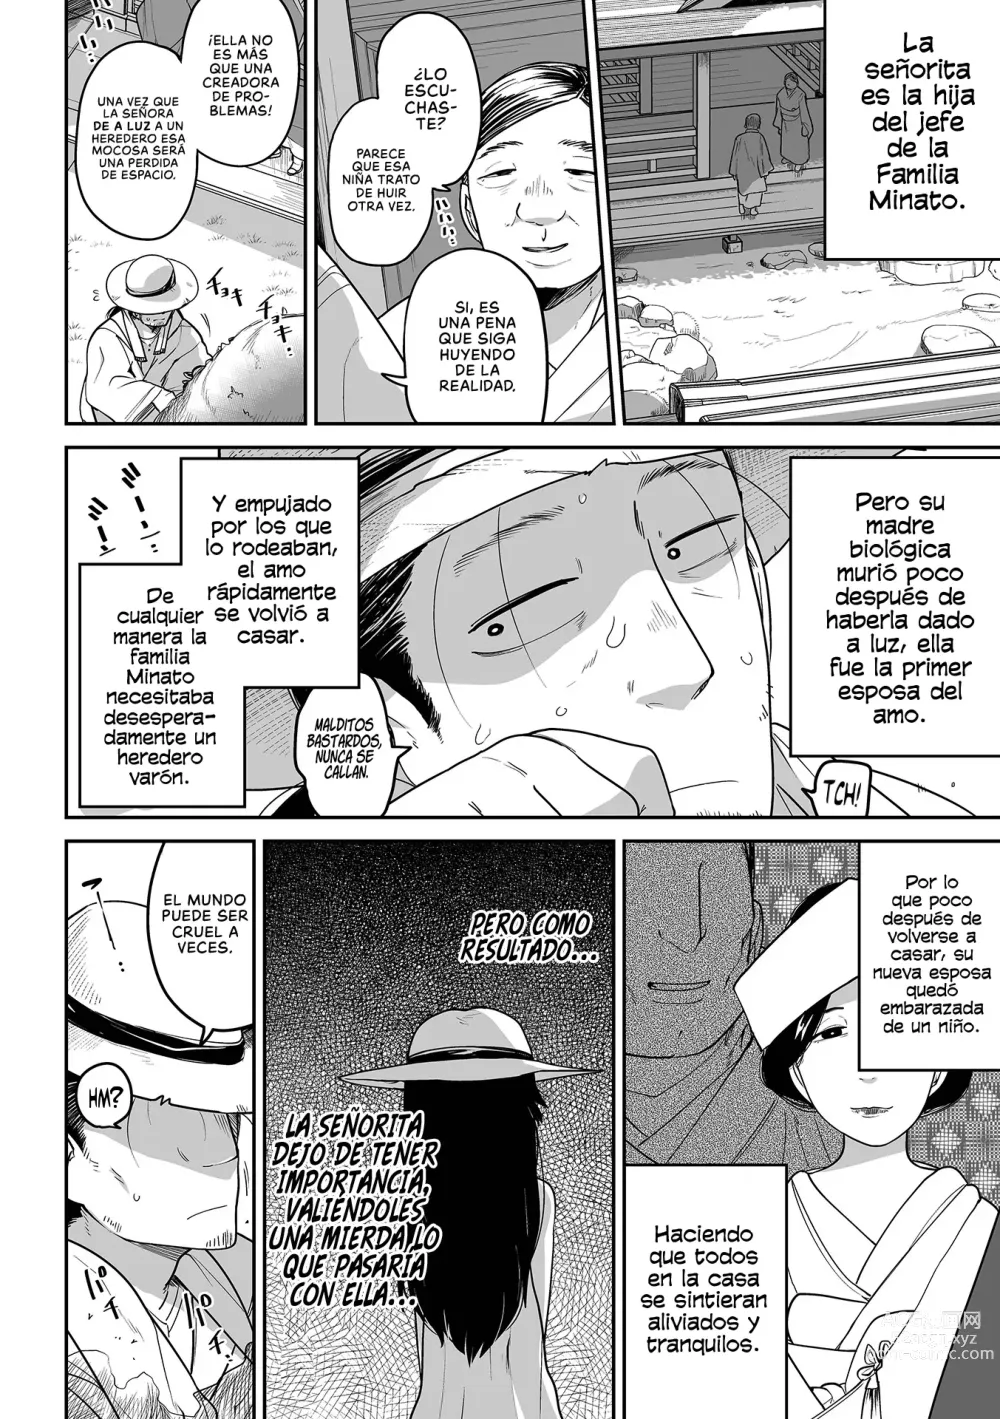 Page 2 of manga Oji Loli Starter Kit